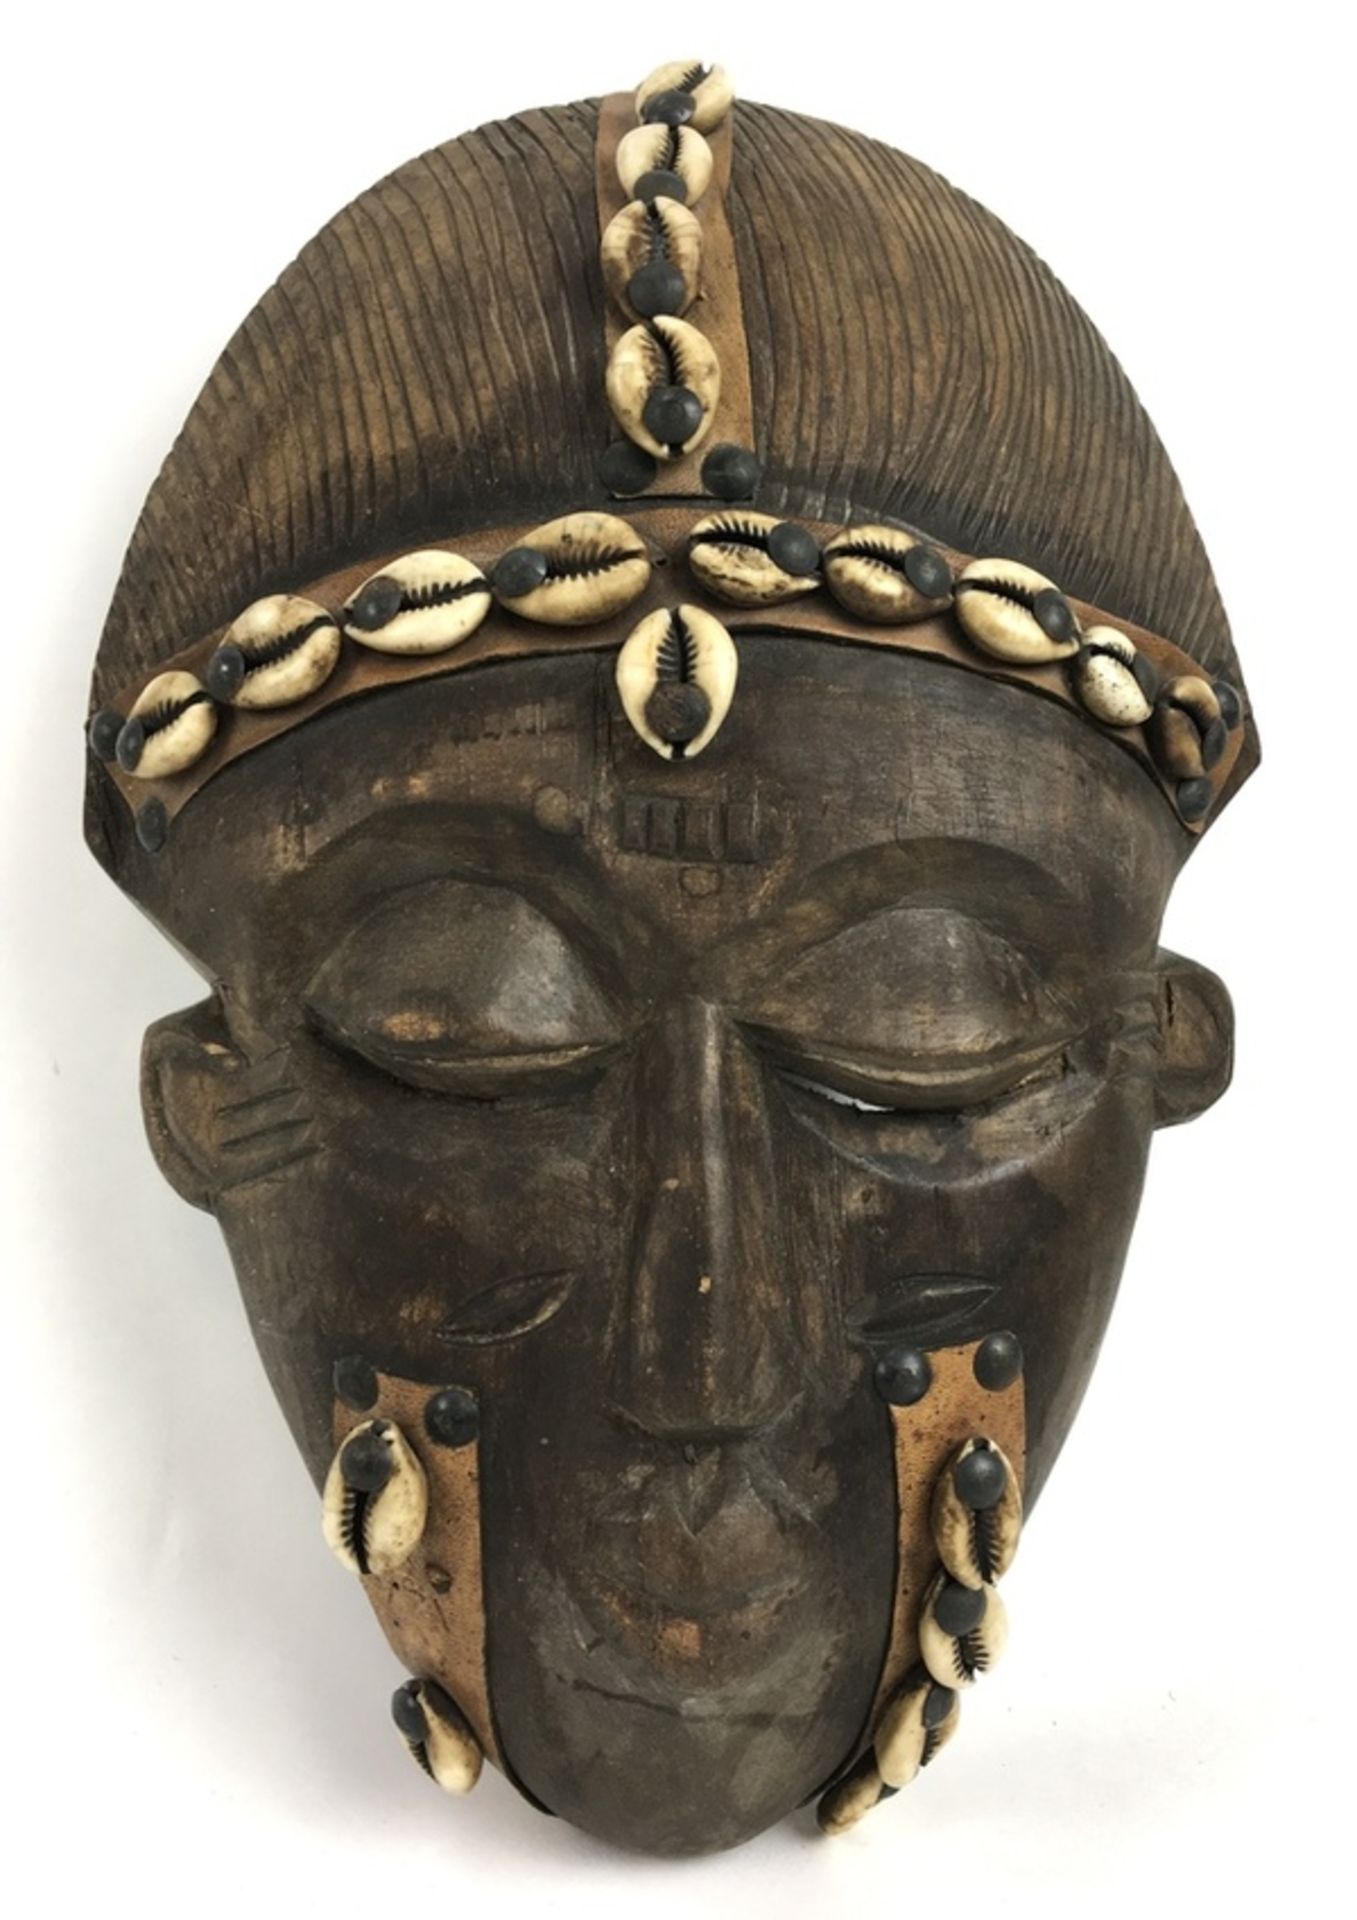 (Etnografica) Hout, decoratief masker met schelpen, 20/21 eeuw AfrikaHout, decoratief masker me